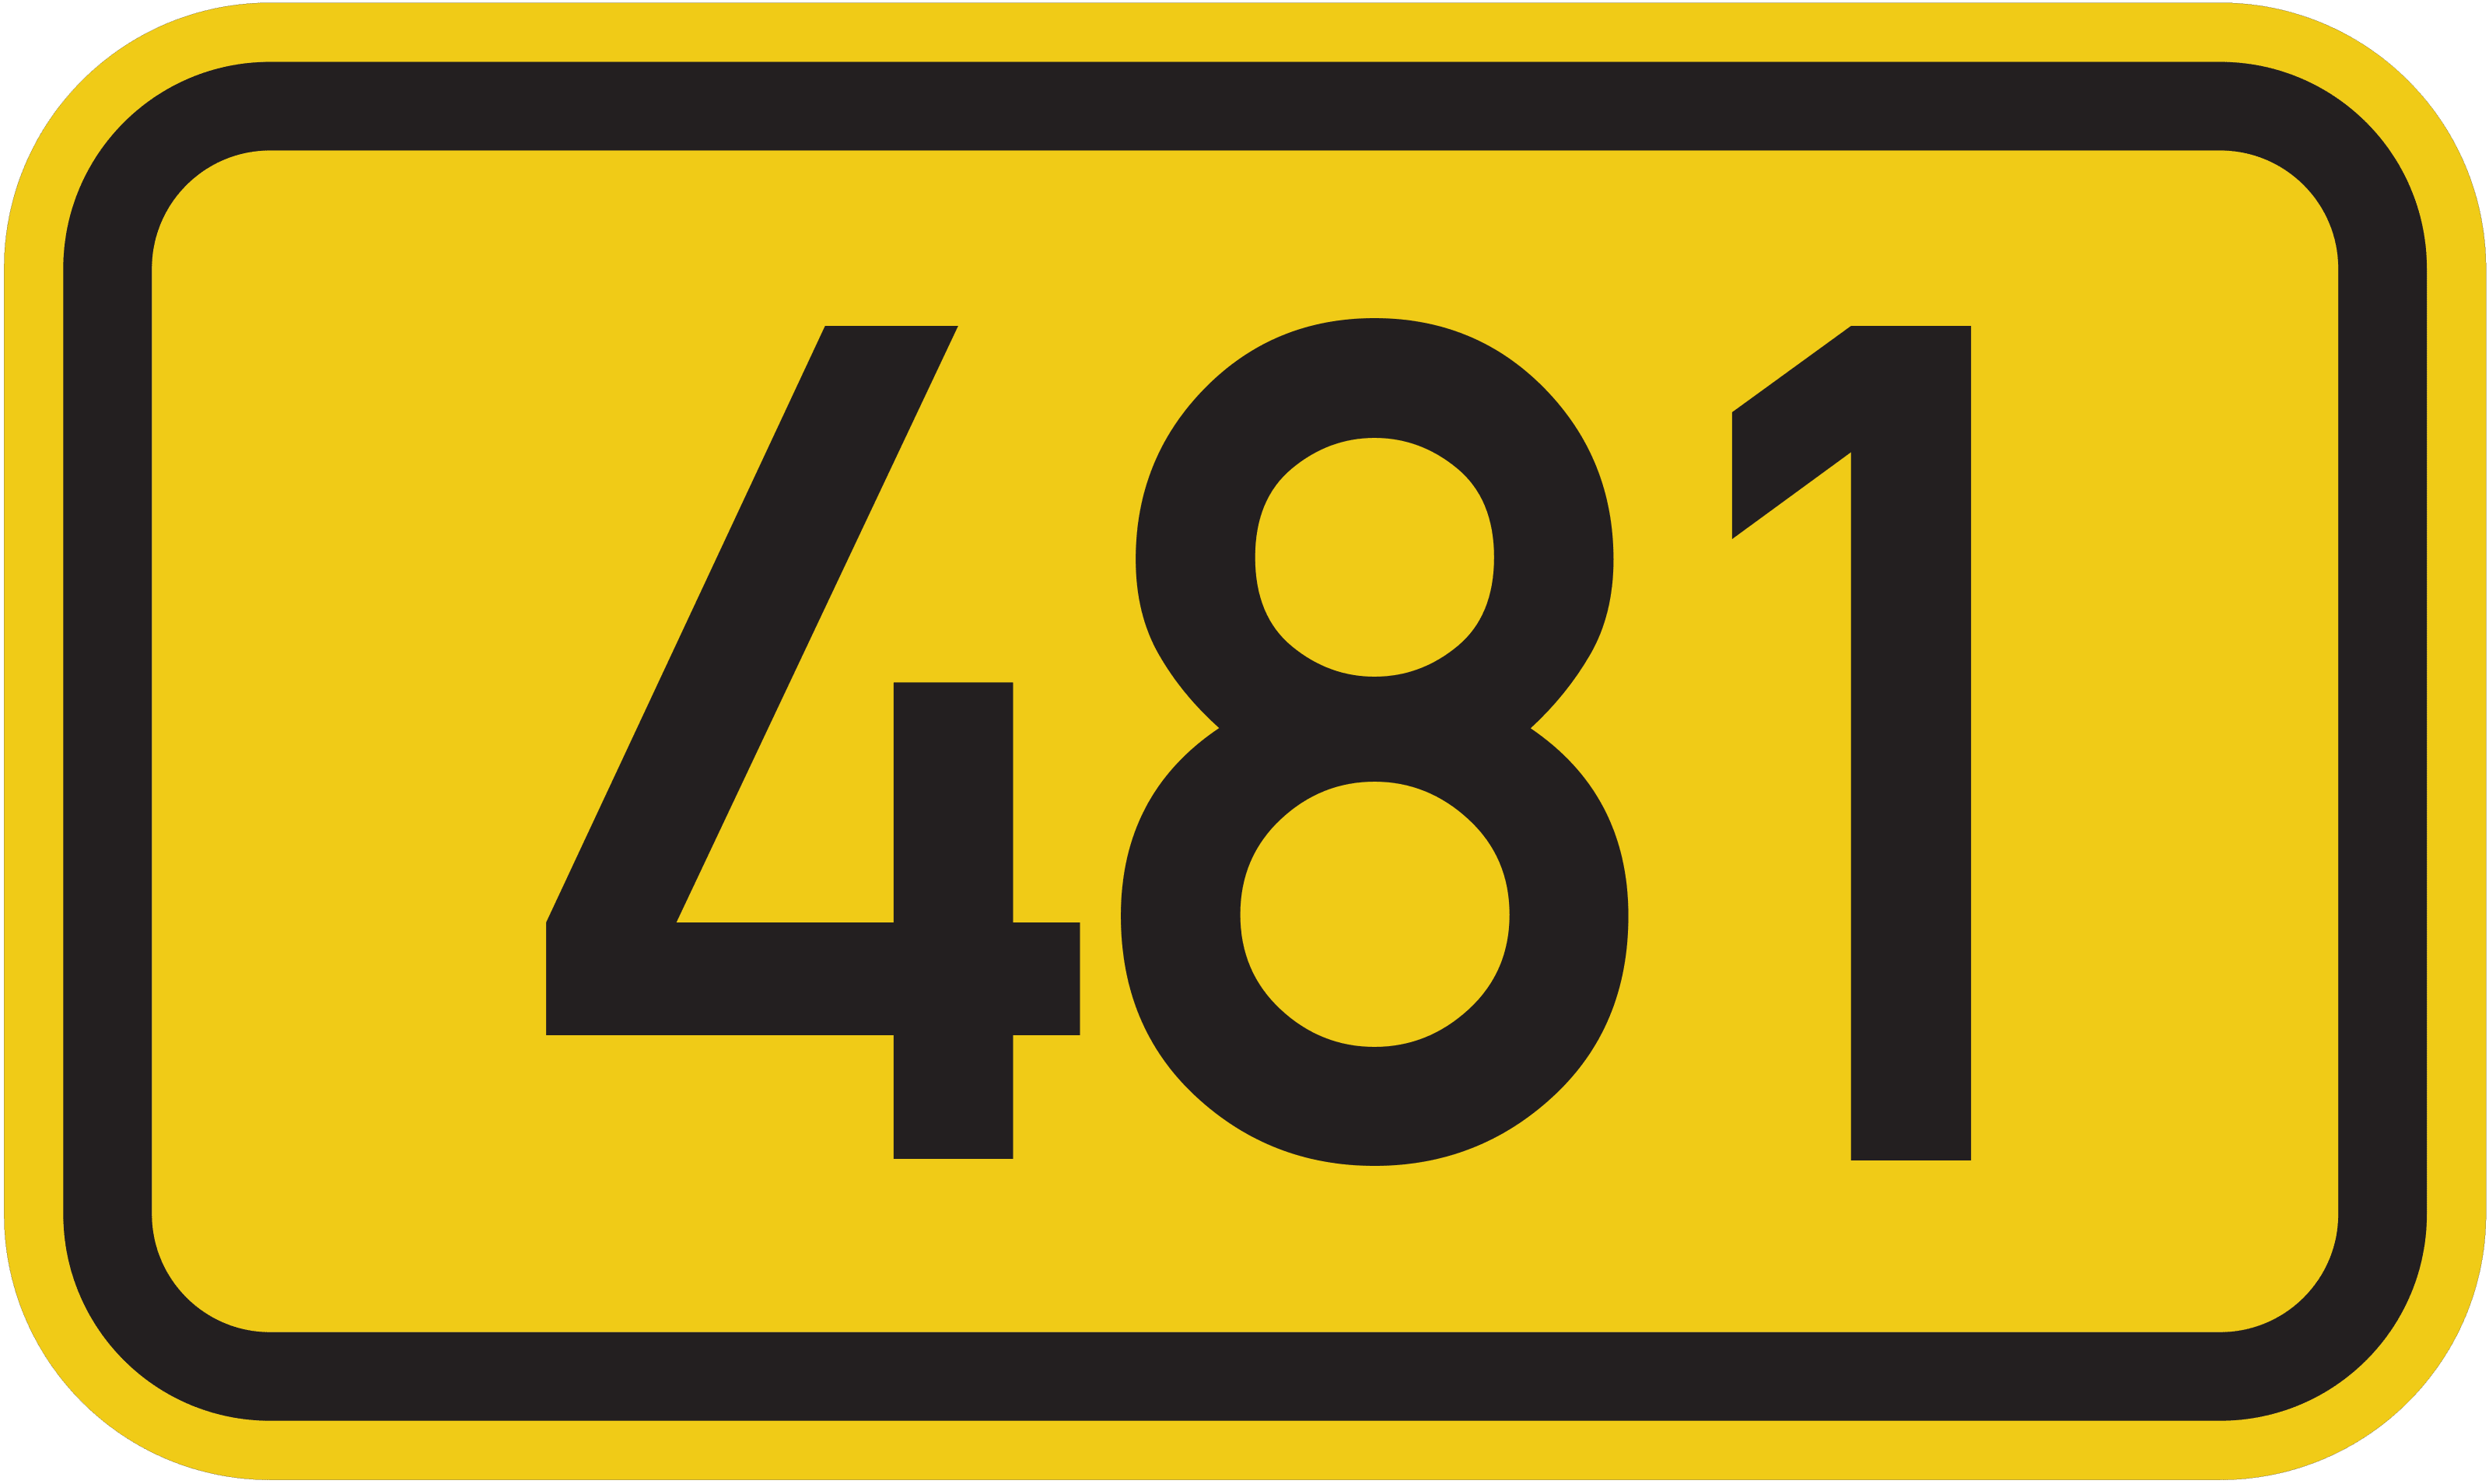 Bundesstraße B 481